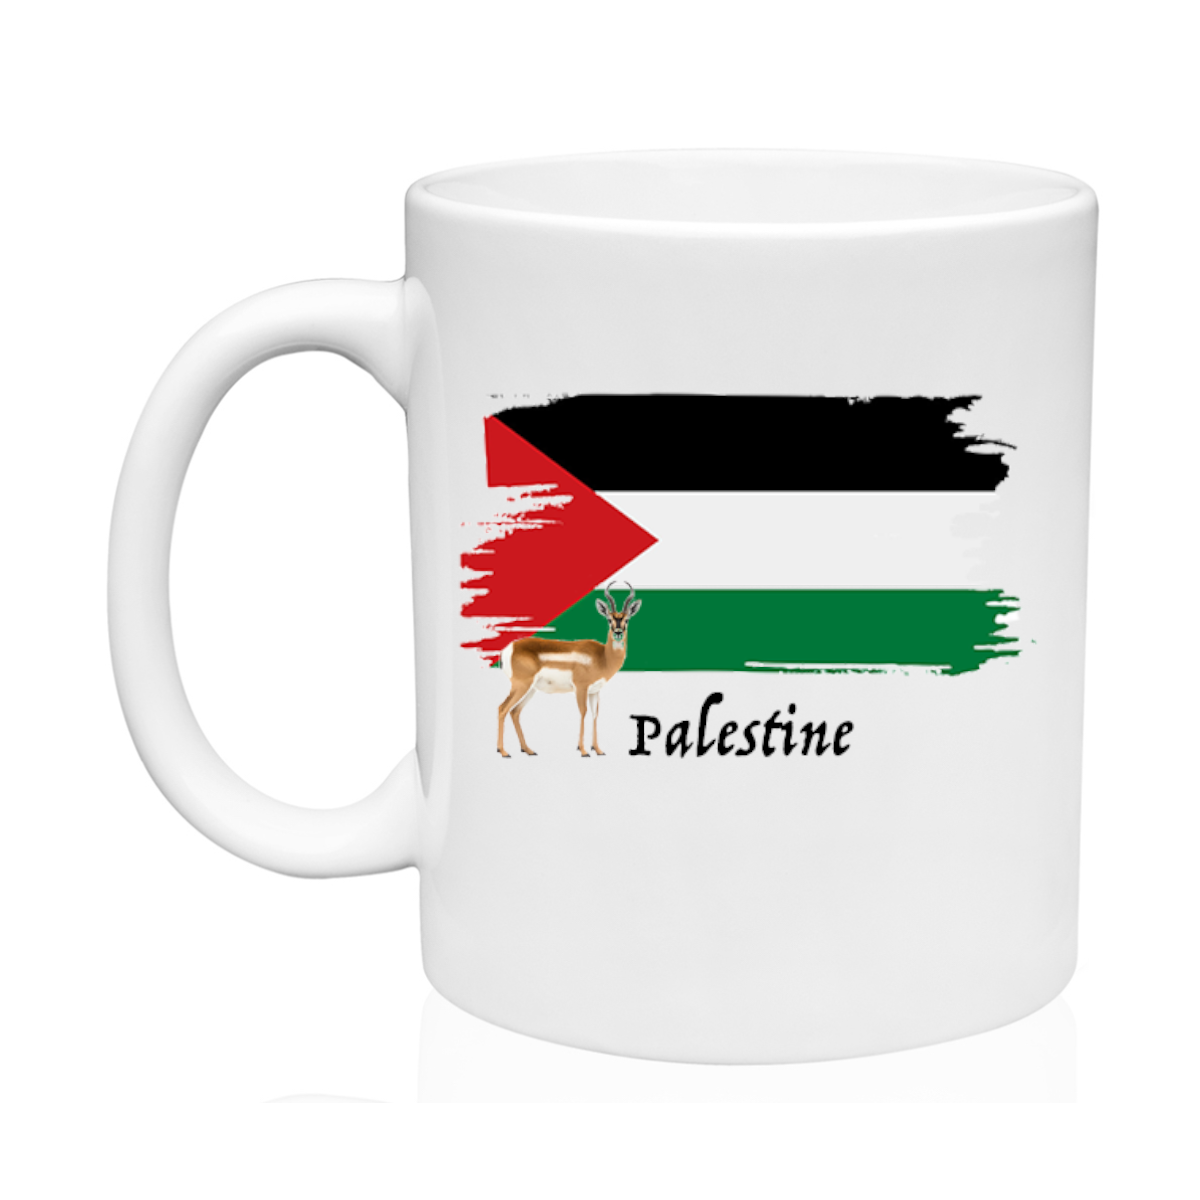 AGAD Turista (I Love Palestine Ceramic Mug)